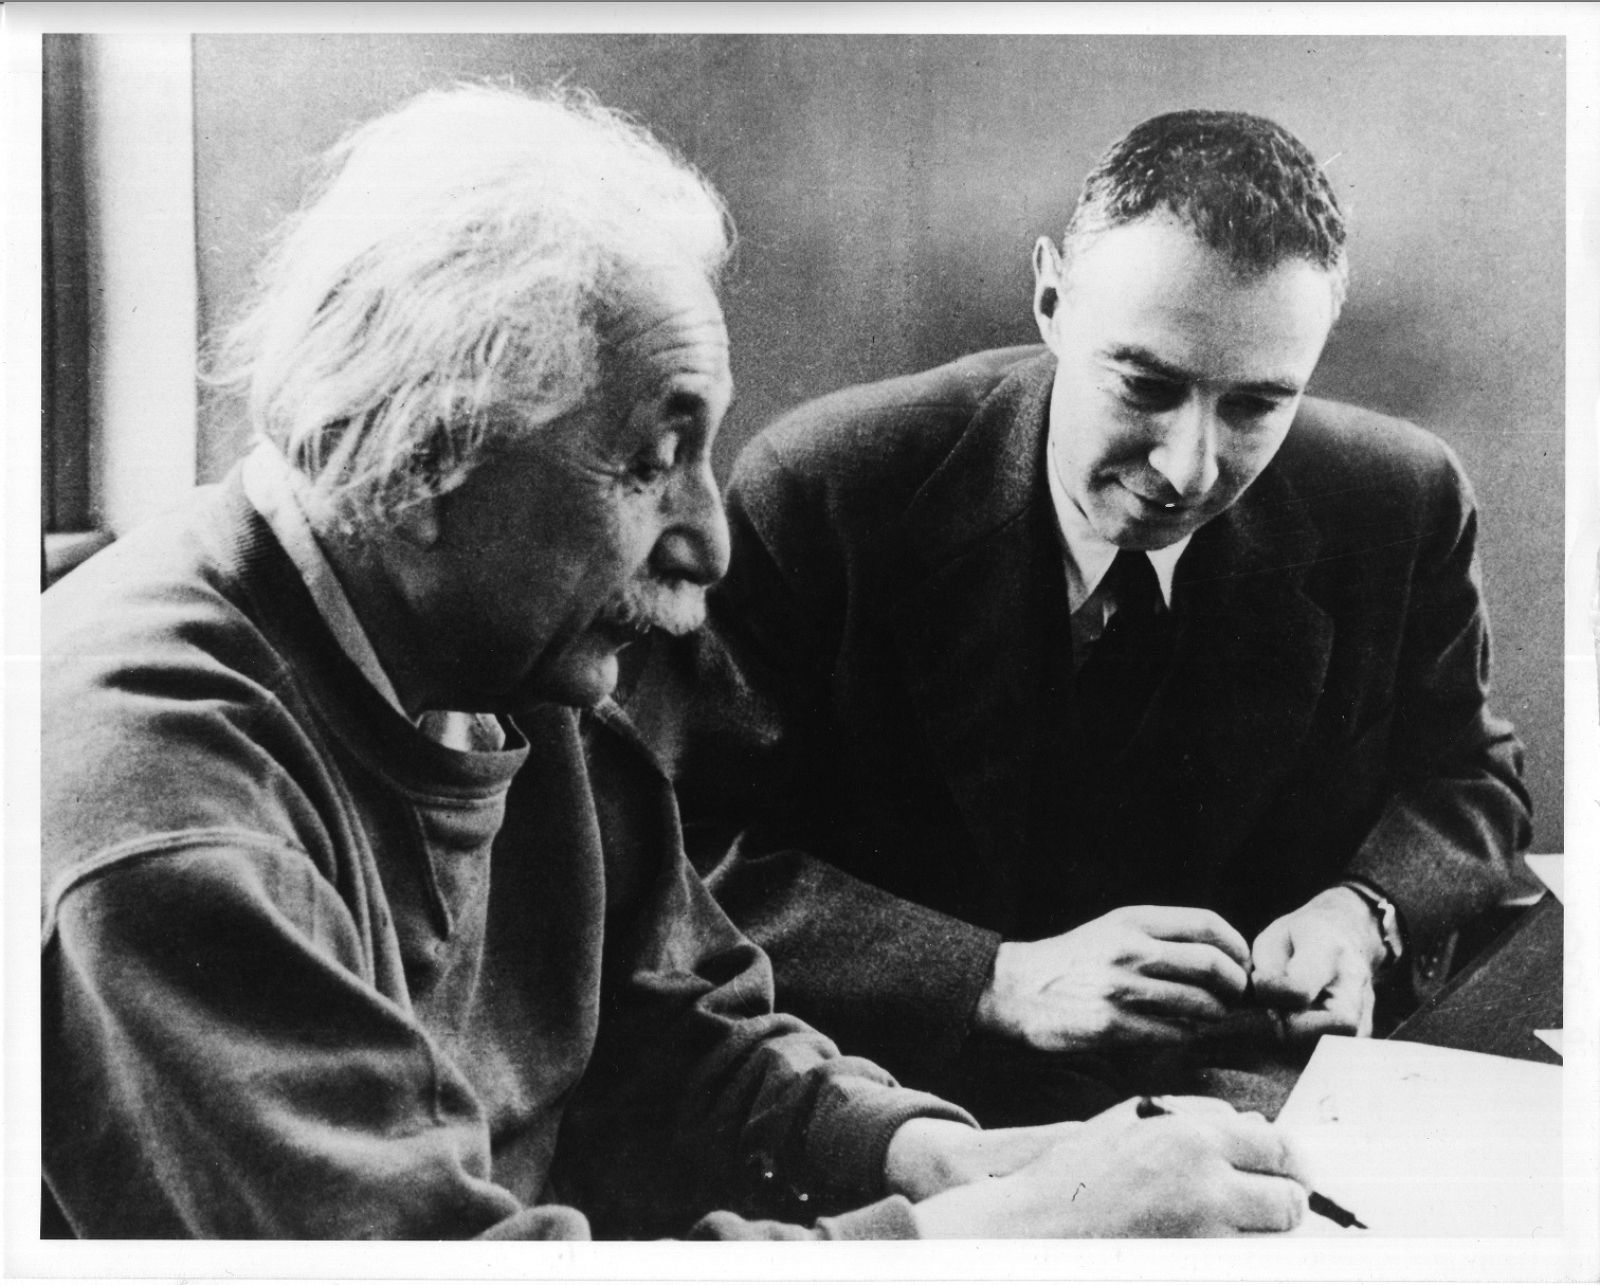 El director del laboratorio era el científico Robert Oppenheimer. Todo era alto secreto.En julio de 1945, todo se decide en un ensayo en el desierto de Nuevo México, "Trinity" es su nombre clave.